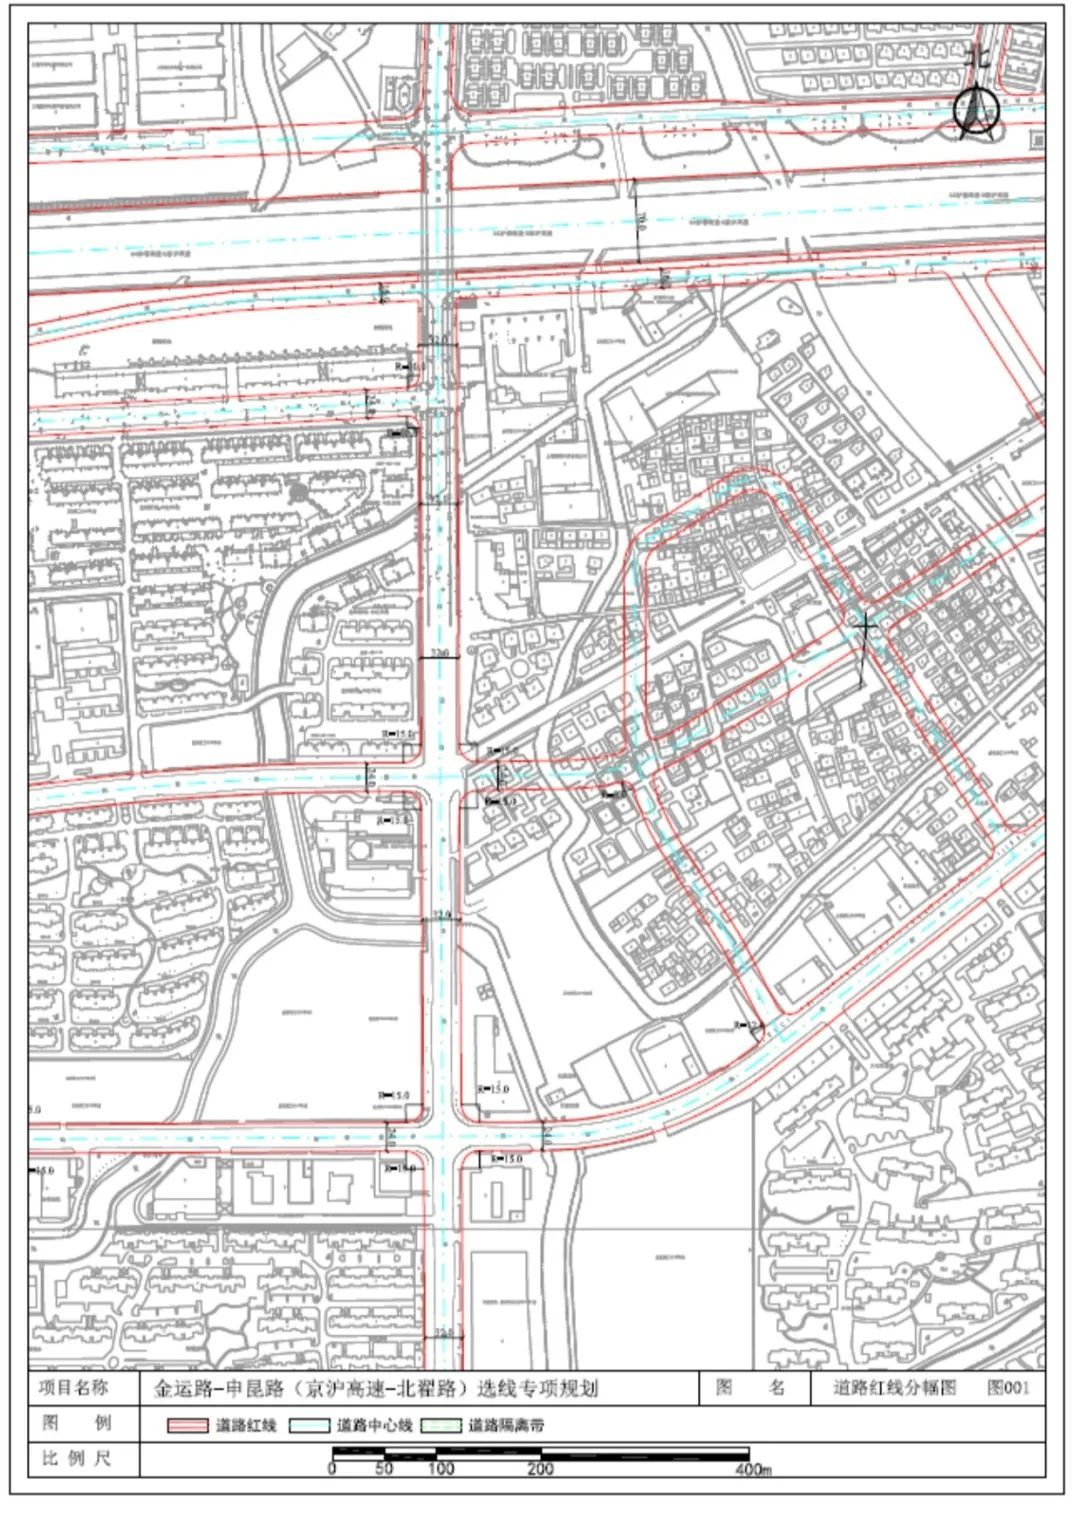 道路红线规划(图1)  道路红线规划调整方案:金运路(鹤望路